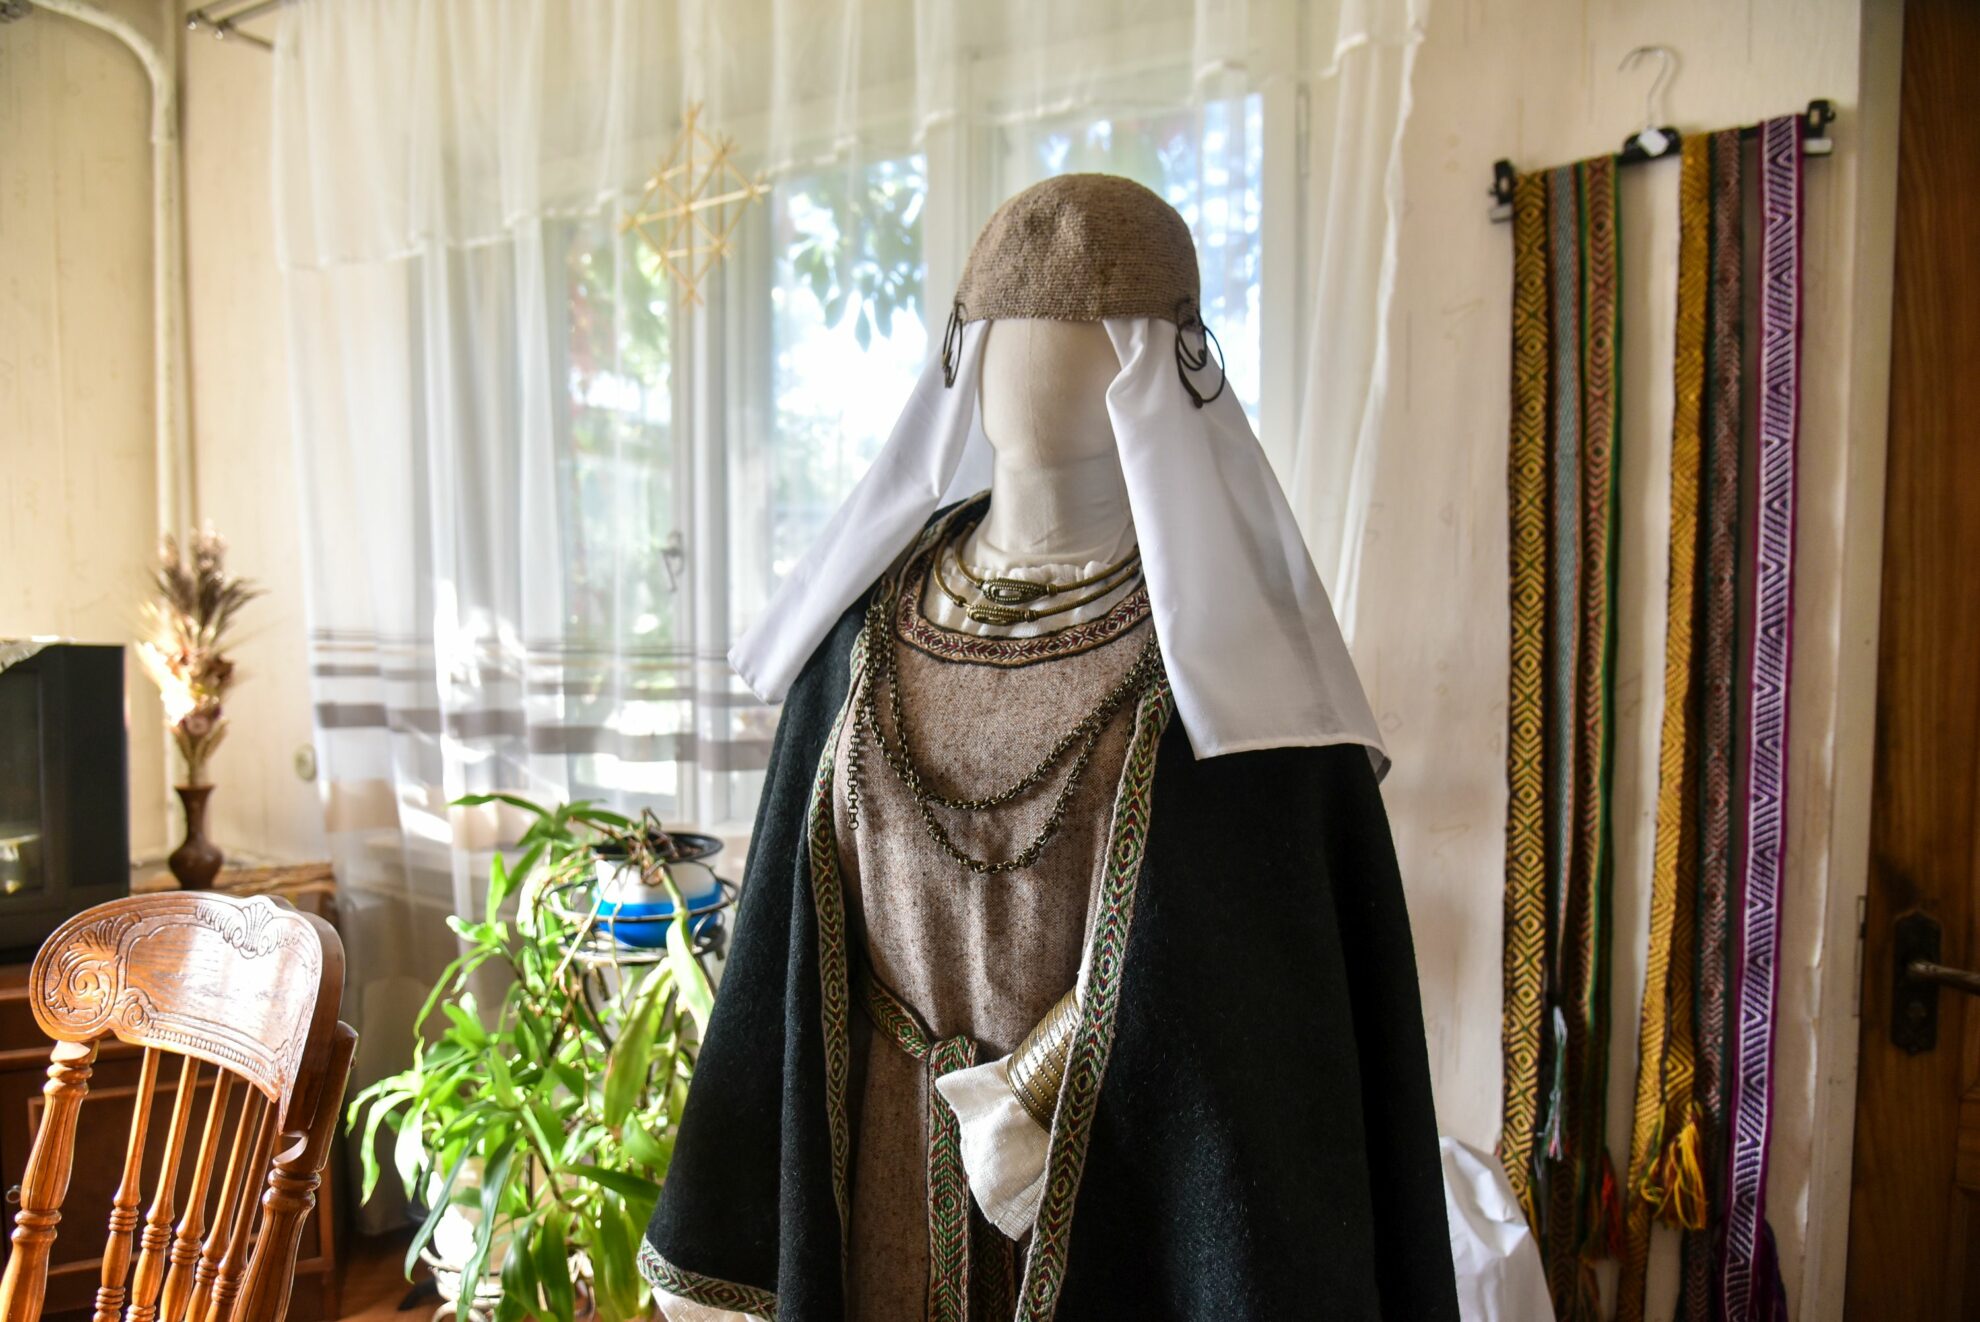 Iš visų tautodailininkės Alės Gegelevičienės kurtų baltiškų kostiumų namuose telikę vos porą – kiti iškeliavę pas moteris. P. Židonio nuotr.